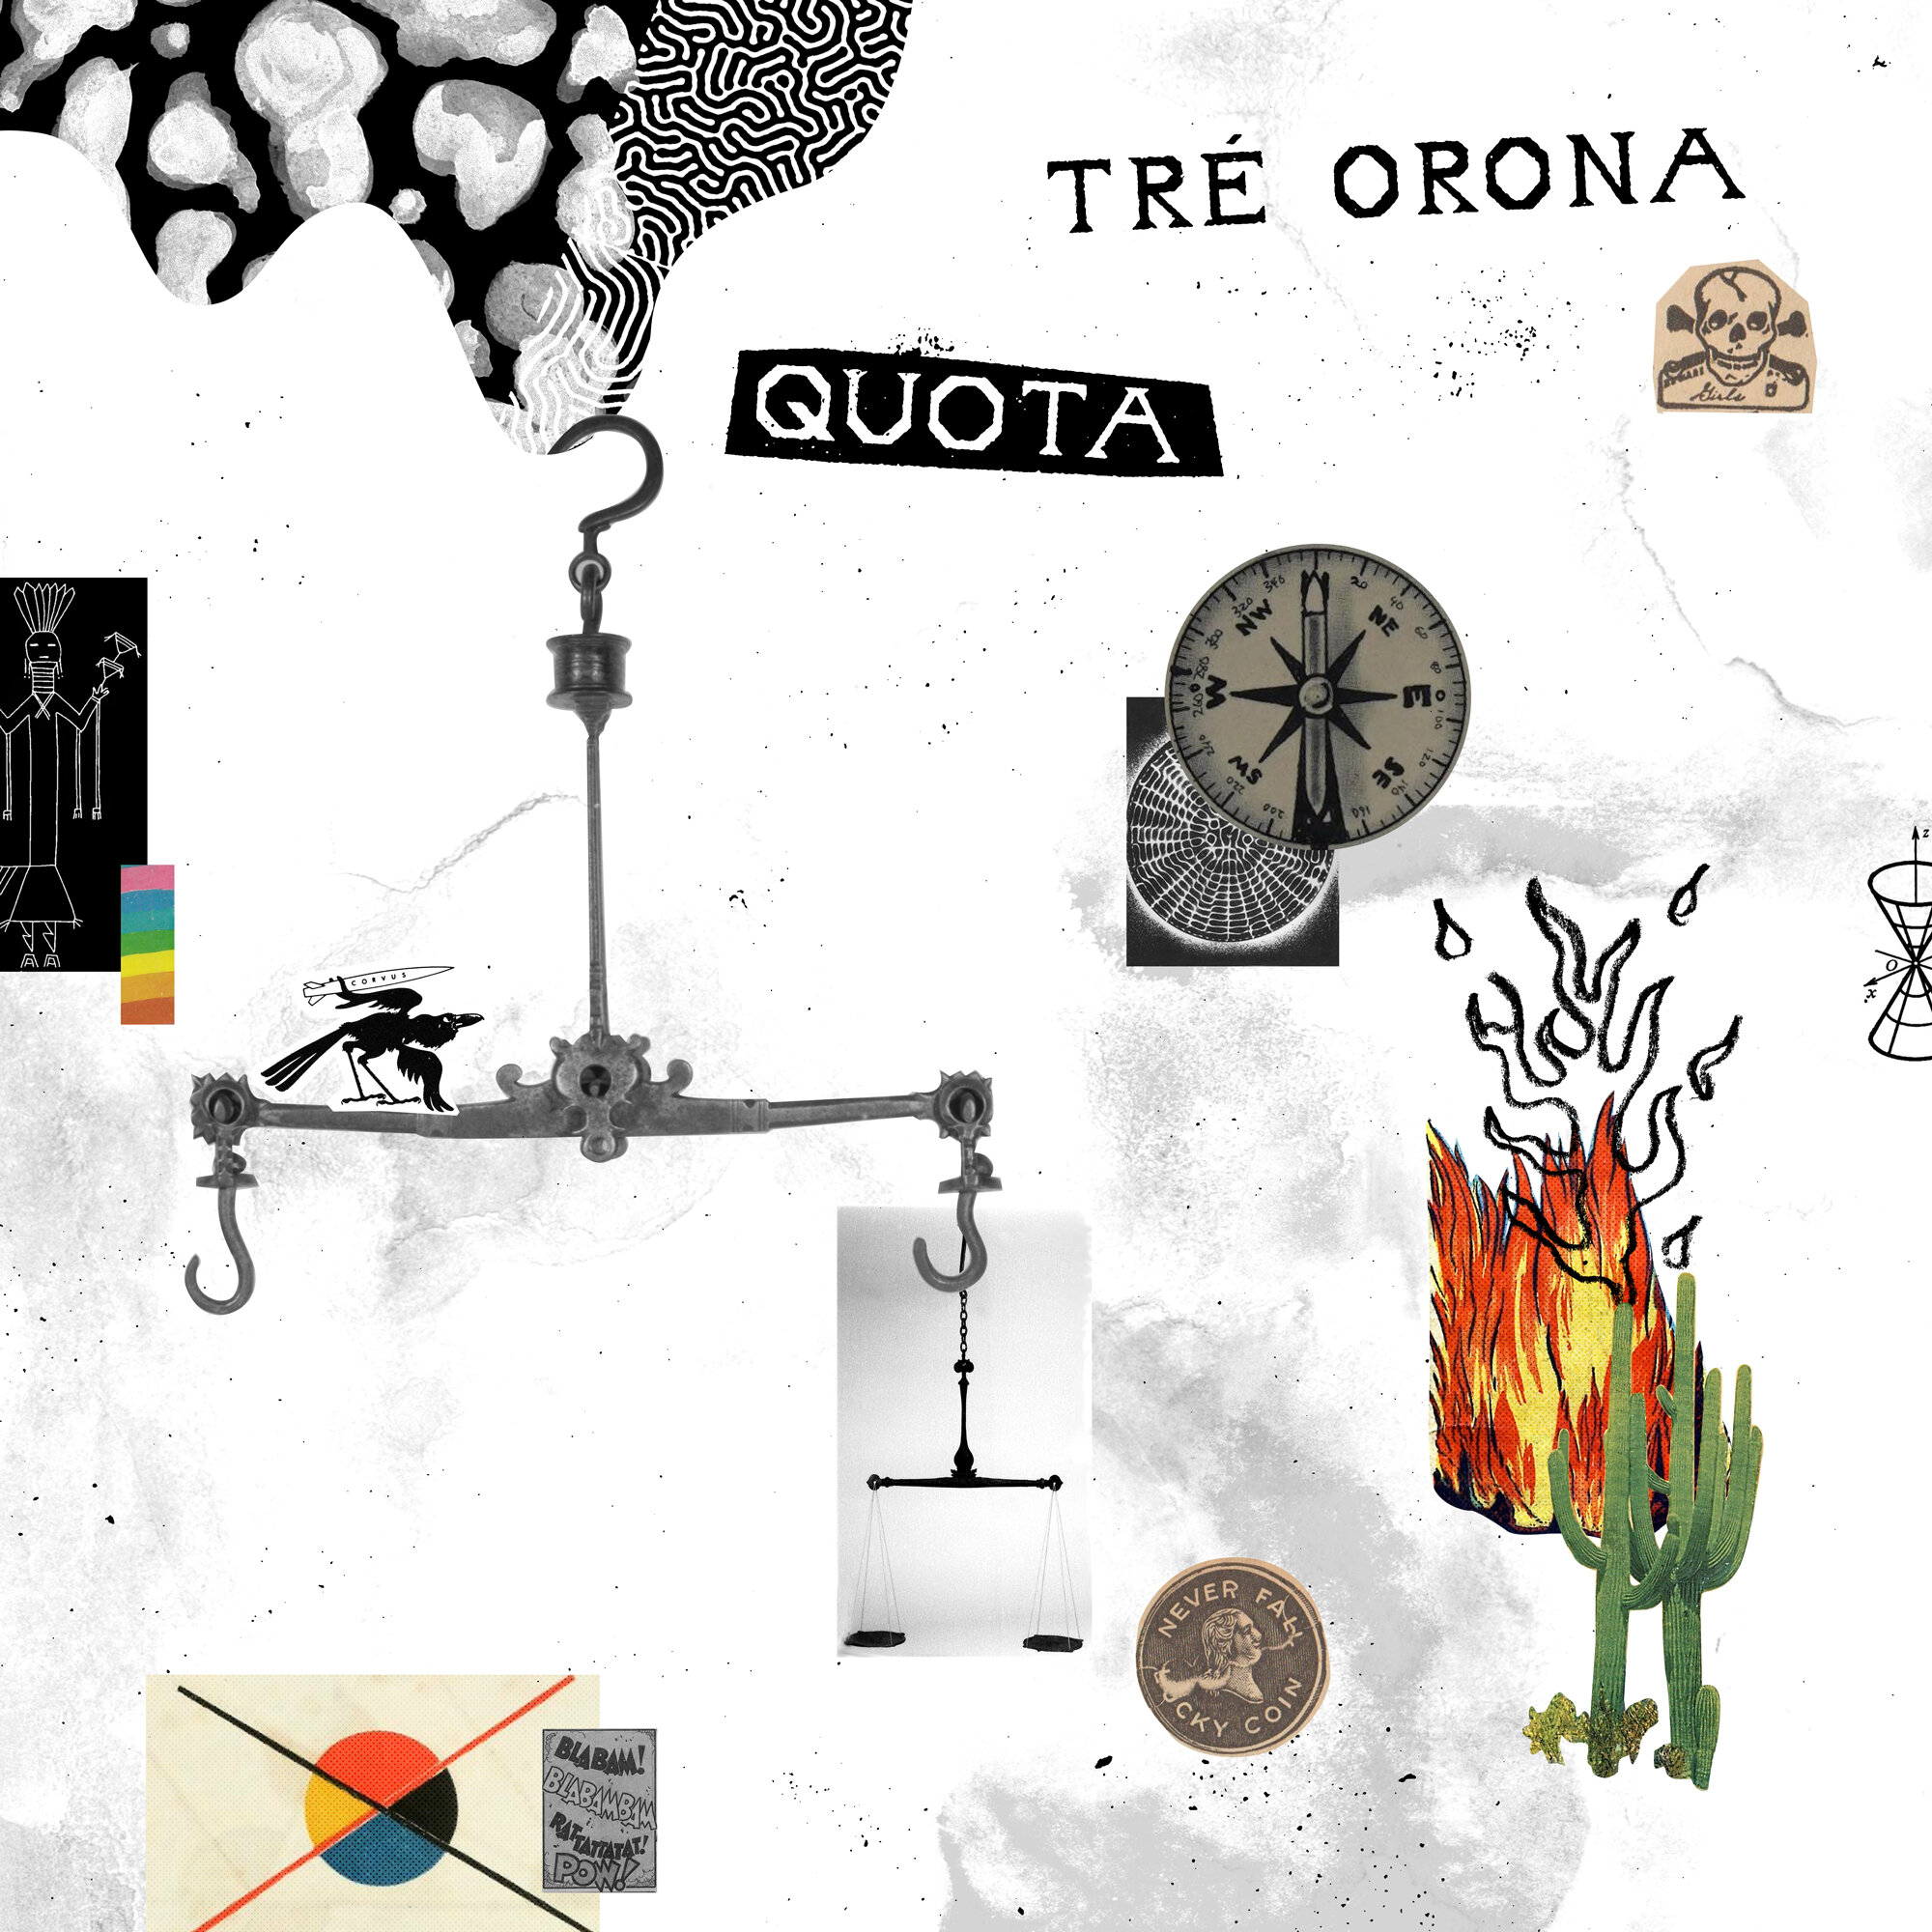 Tre-Orona-Quota.jpg